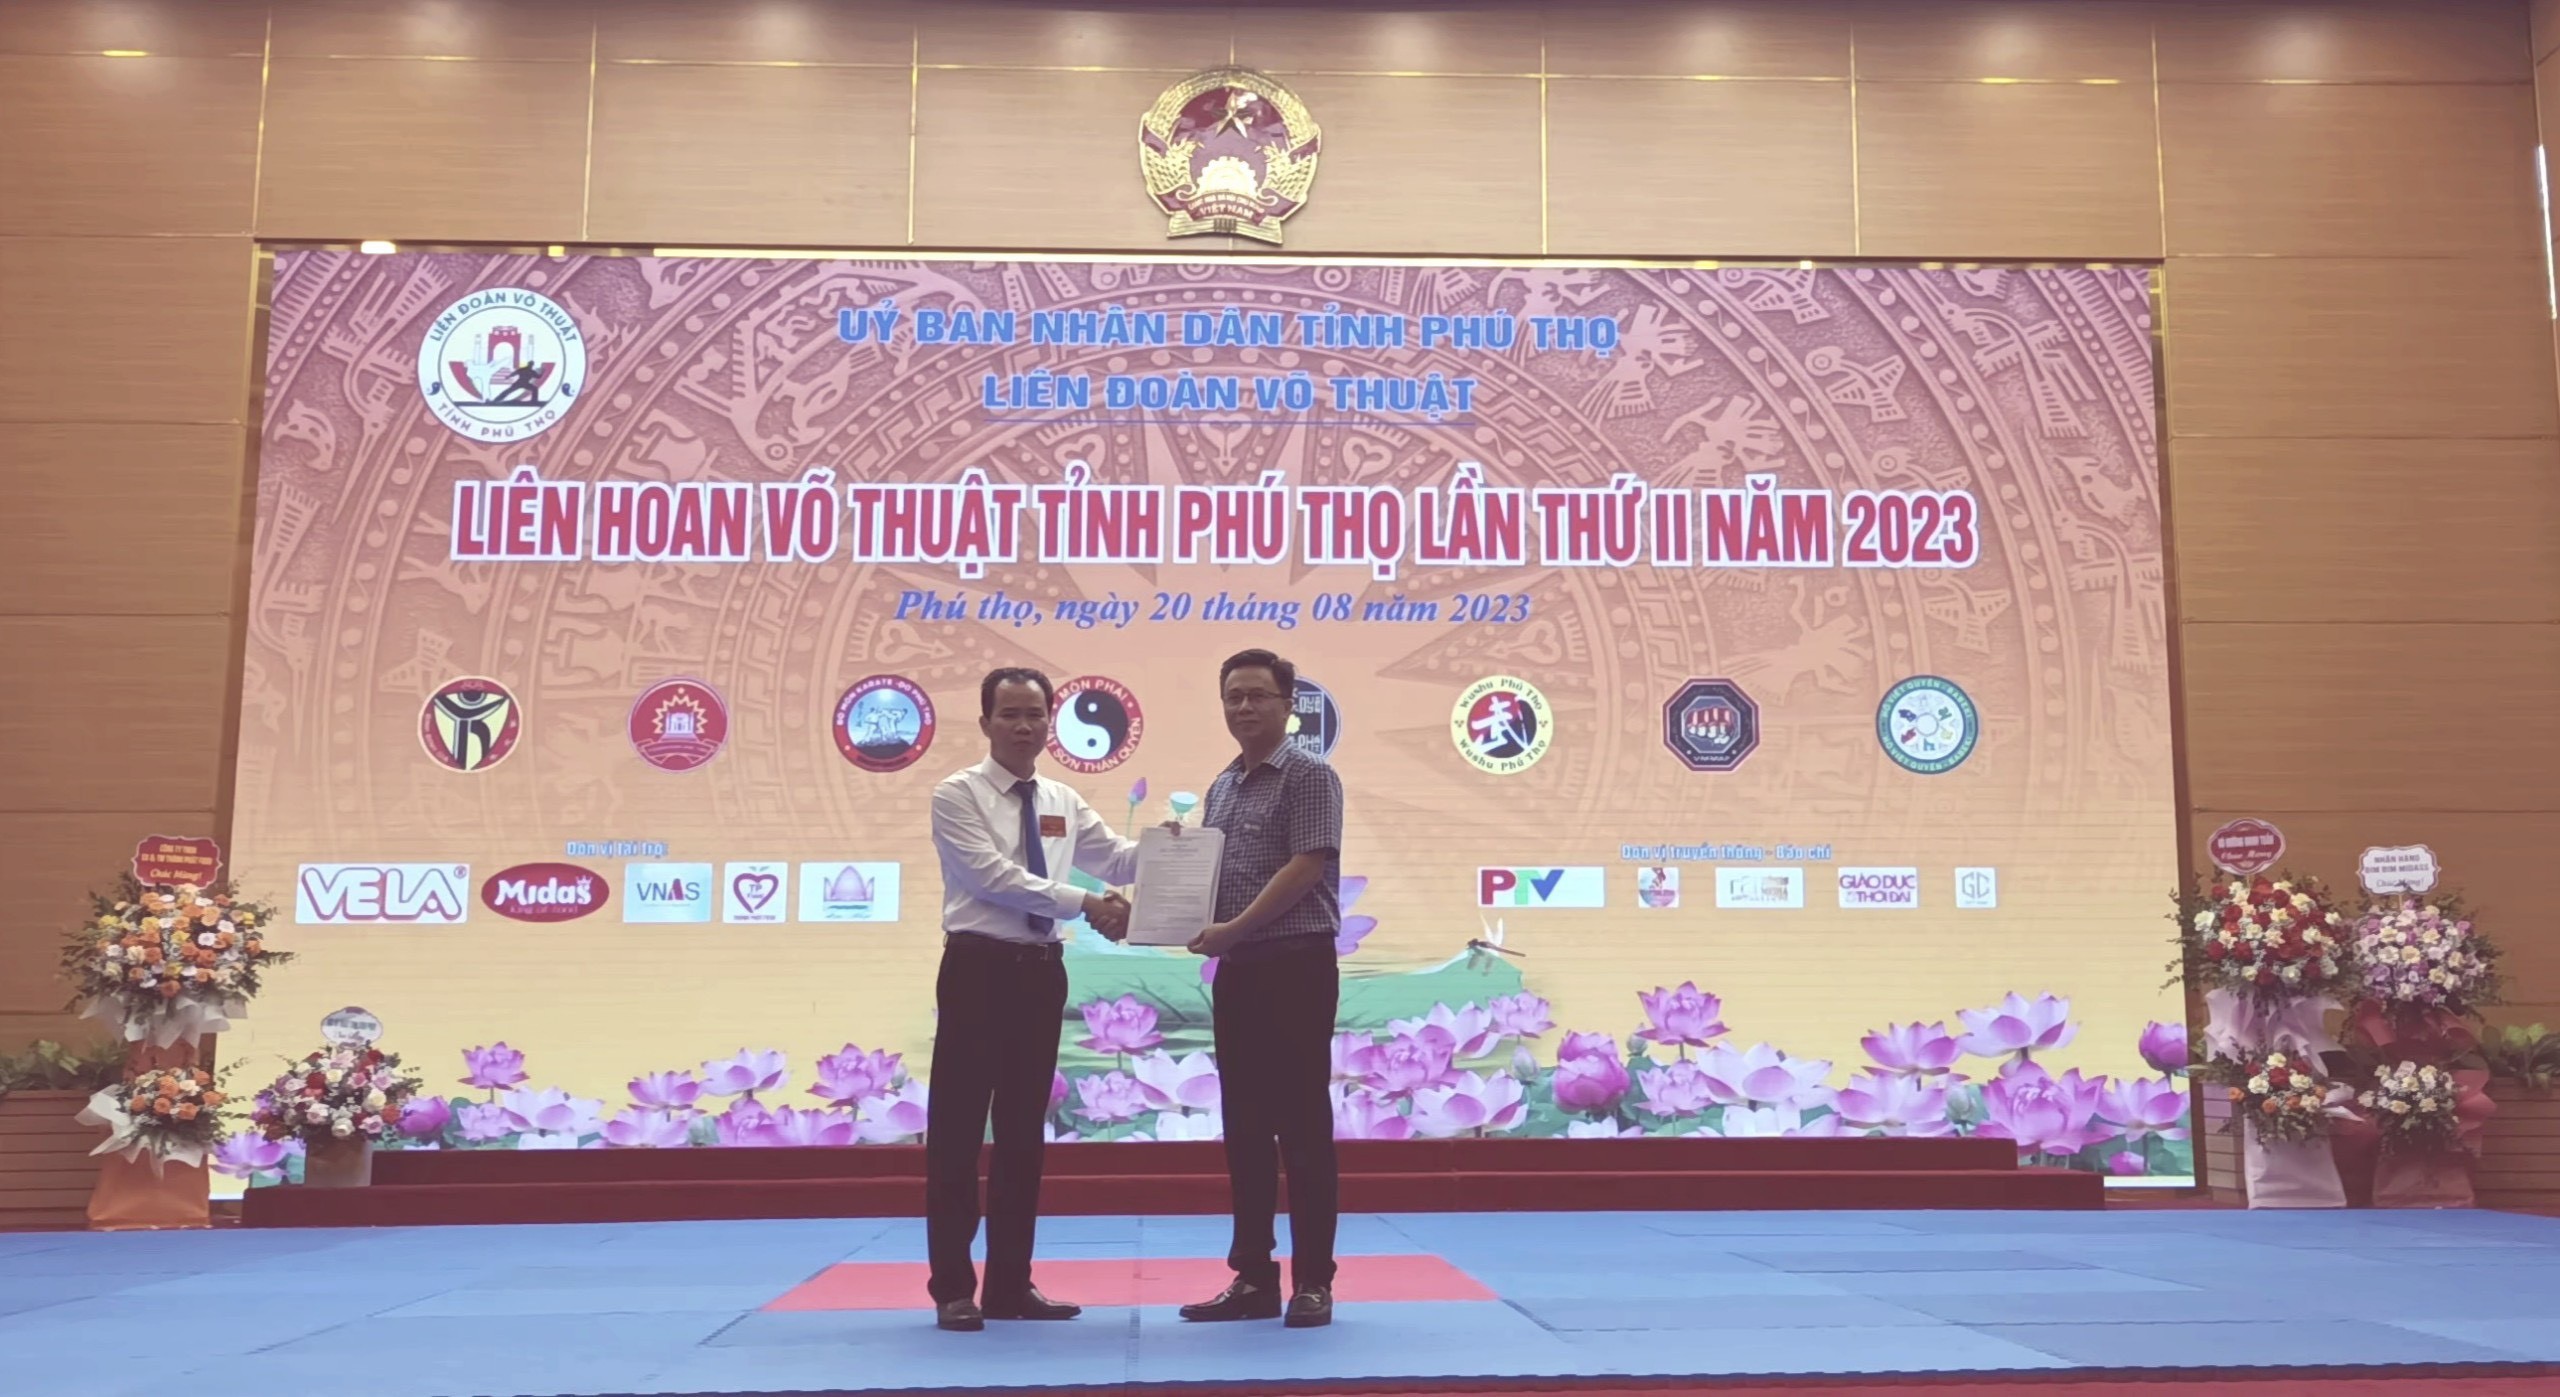 Tại Liên hoan Võ thuật tỉnh Phú Thọ năm 2023 VNAS và Liên đoàn Võ thuật tỉnh Phú Thọ đã ký kết hợp tác về tuyển sinh liên kết đào tạo nghề hàng không